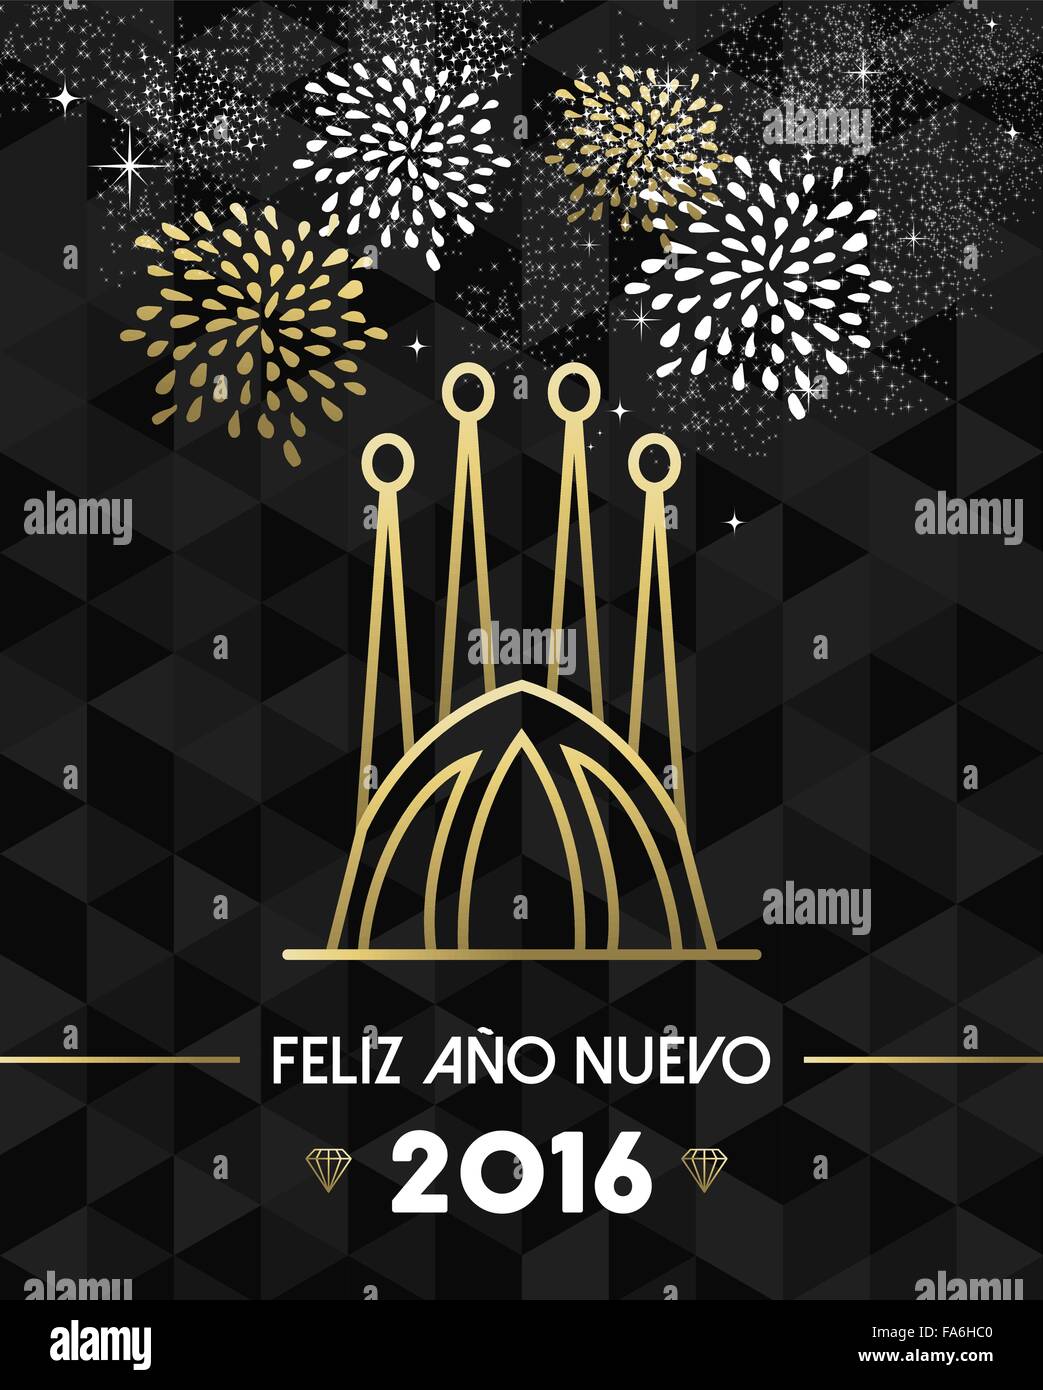 Bonne Année 2016 Carte de souhaits avec Barcelone Espagne Sagrada Familia church style du contour en or. Vecteur EPS10. Illustration de Vecteur